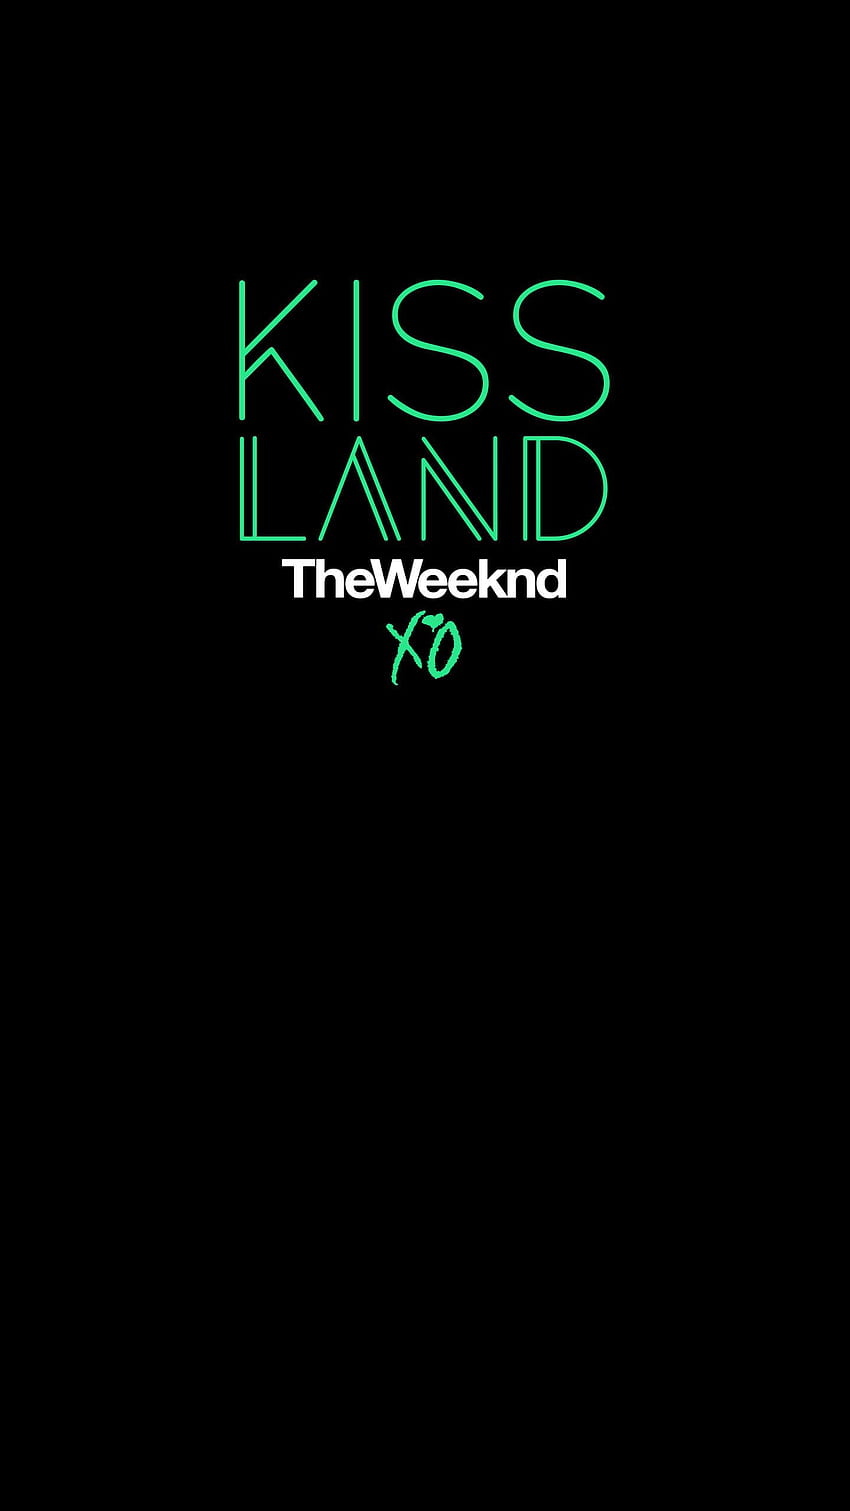 The Weeknd Kiss Landをベースに、Kiss Landのスマホを自作することにしました HD電話の壁紙